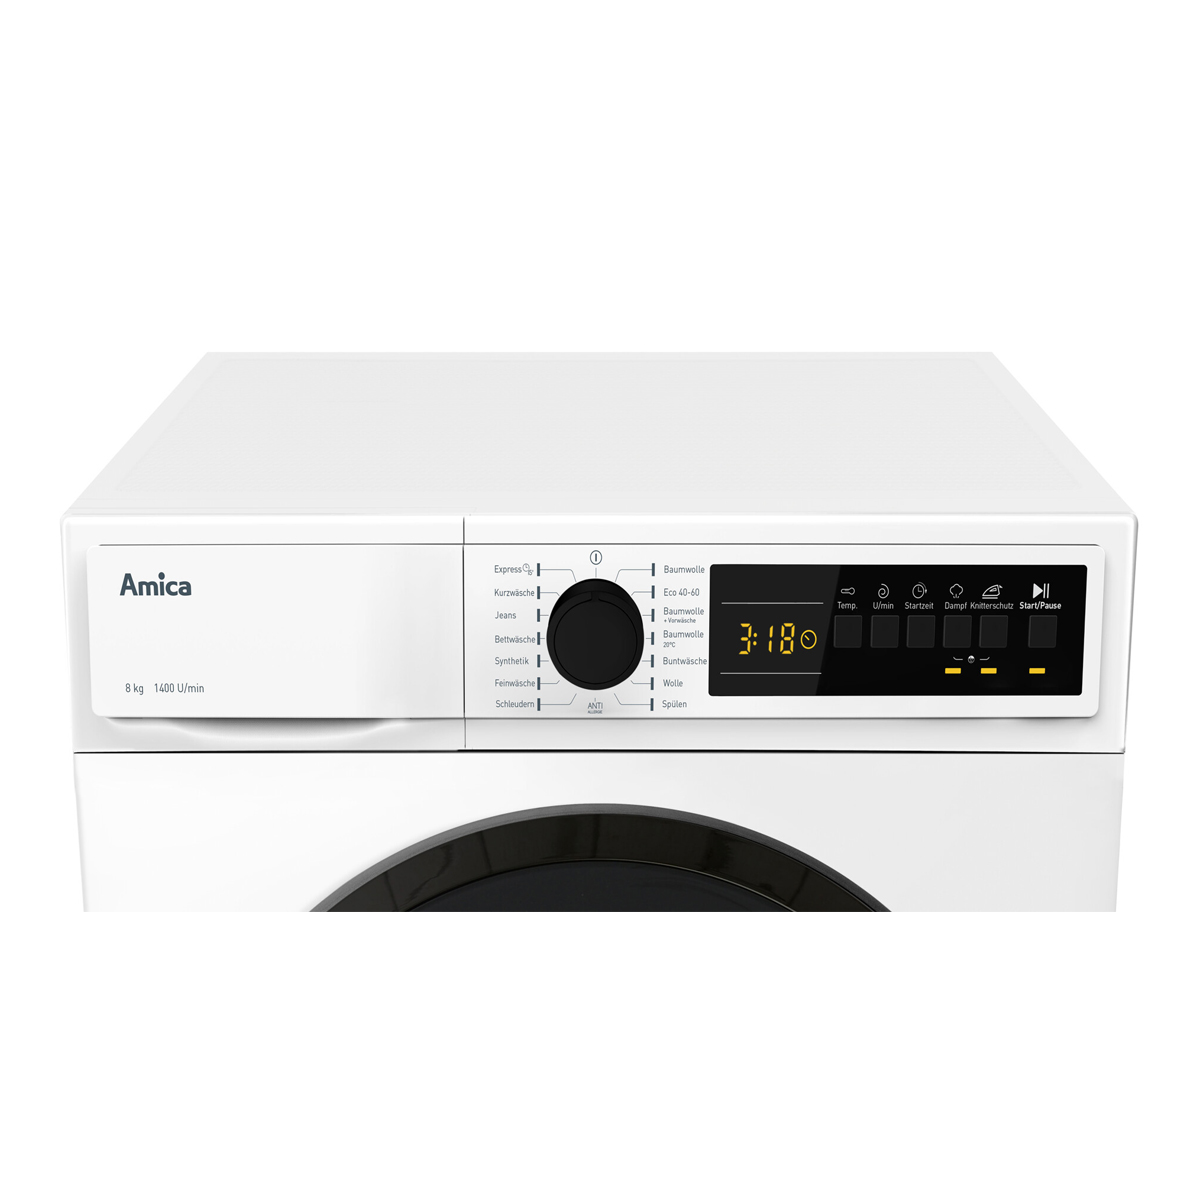 A) (8 8kg AMICA Aqua Waschmaschine Waschmaschine kg, Stopp Motor bürstenloser Startzeitvorwahl EEK:A